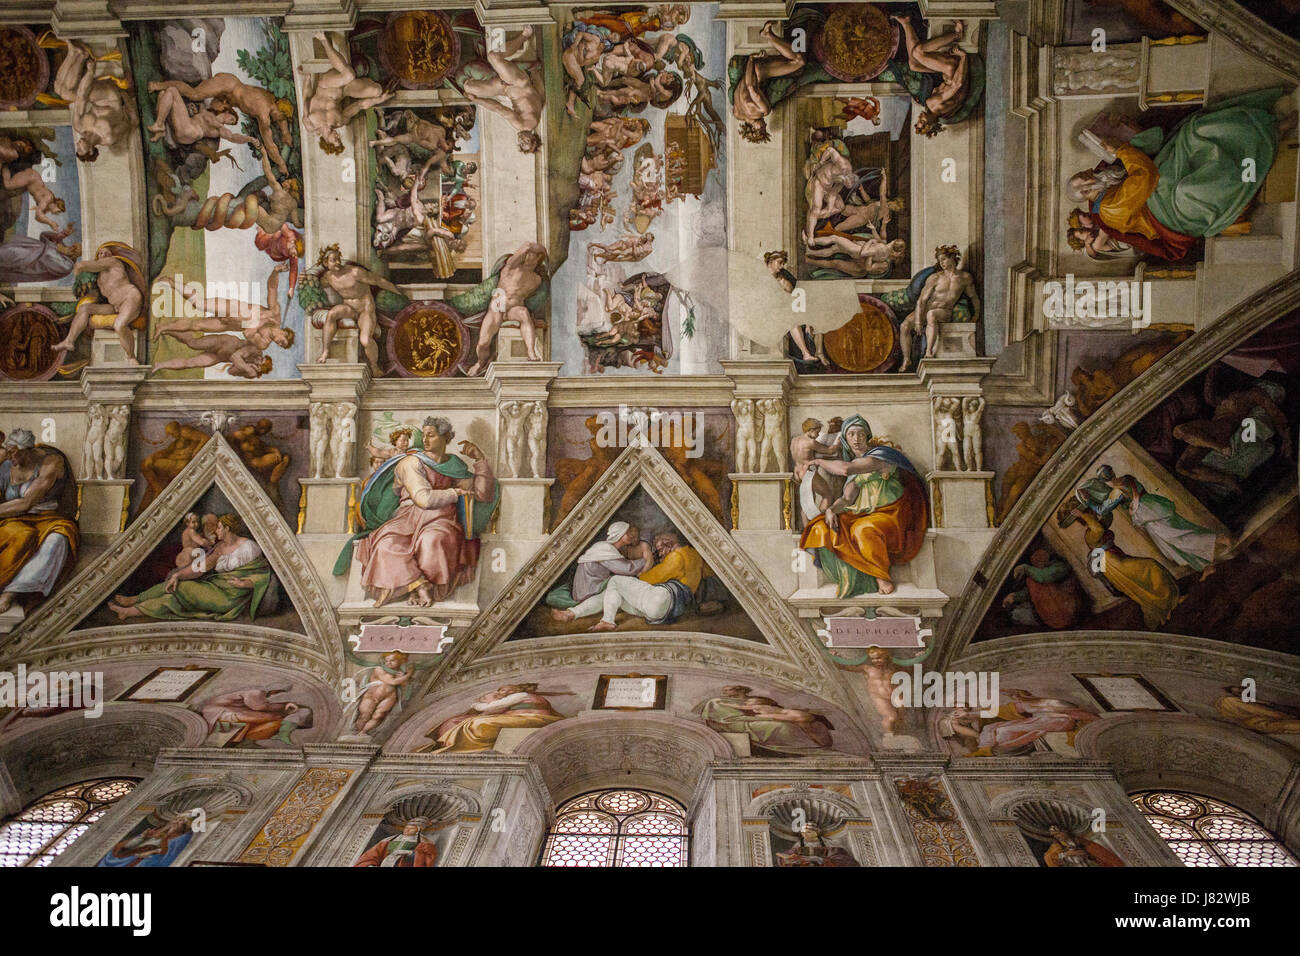 Città del Vaticano, Roma - marzo 02, 2016: interni e dettagli architettonici della cappella sistina, 02 marzo 2016, Città del Vaticano, Roma, Italia. Foto Stock